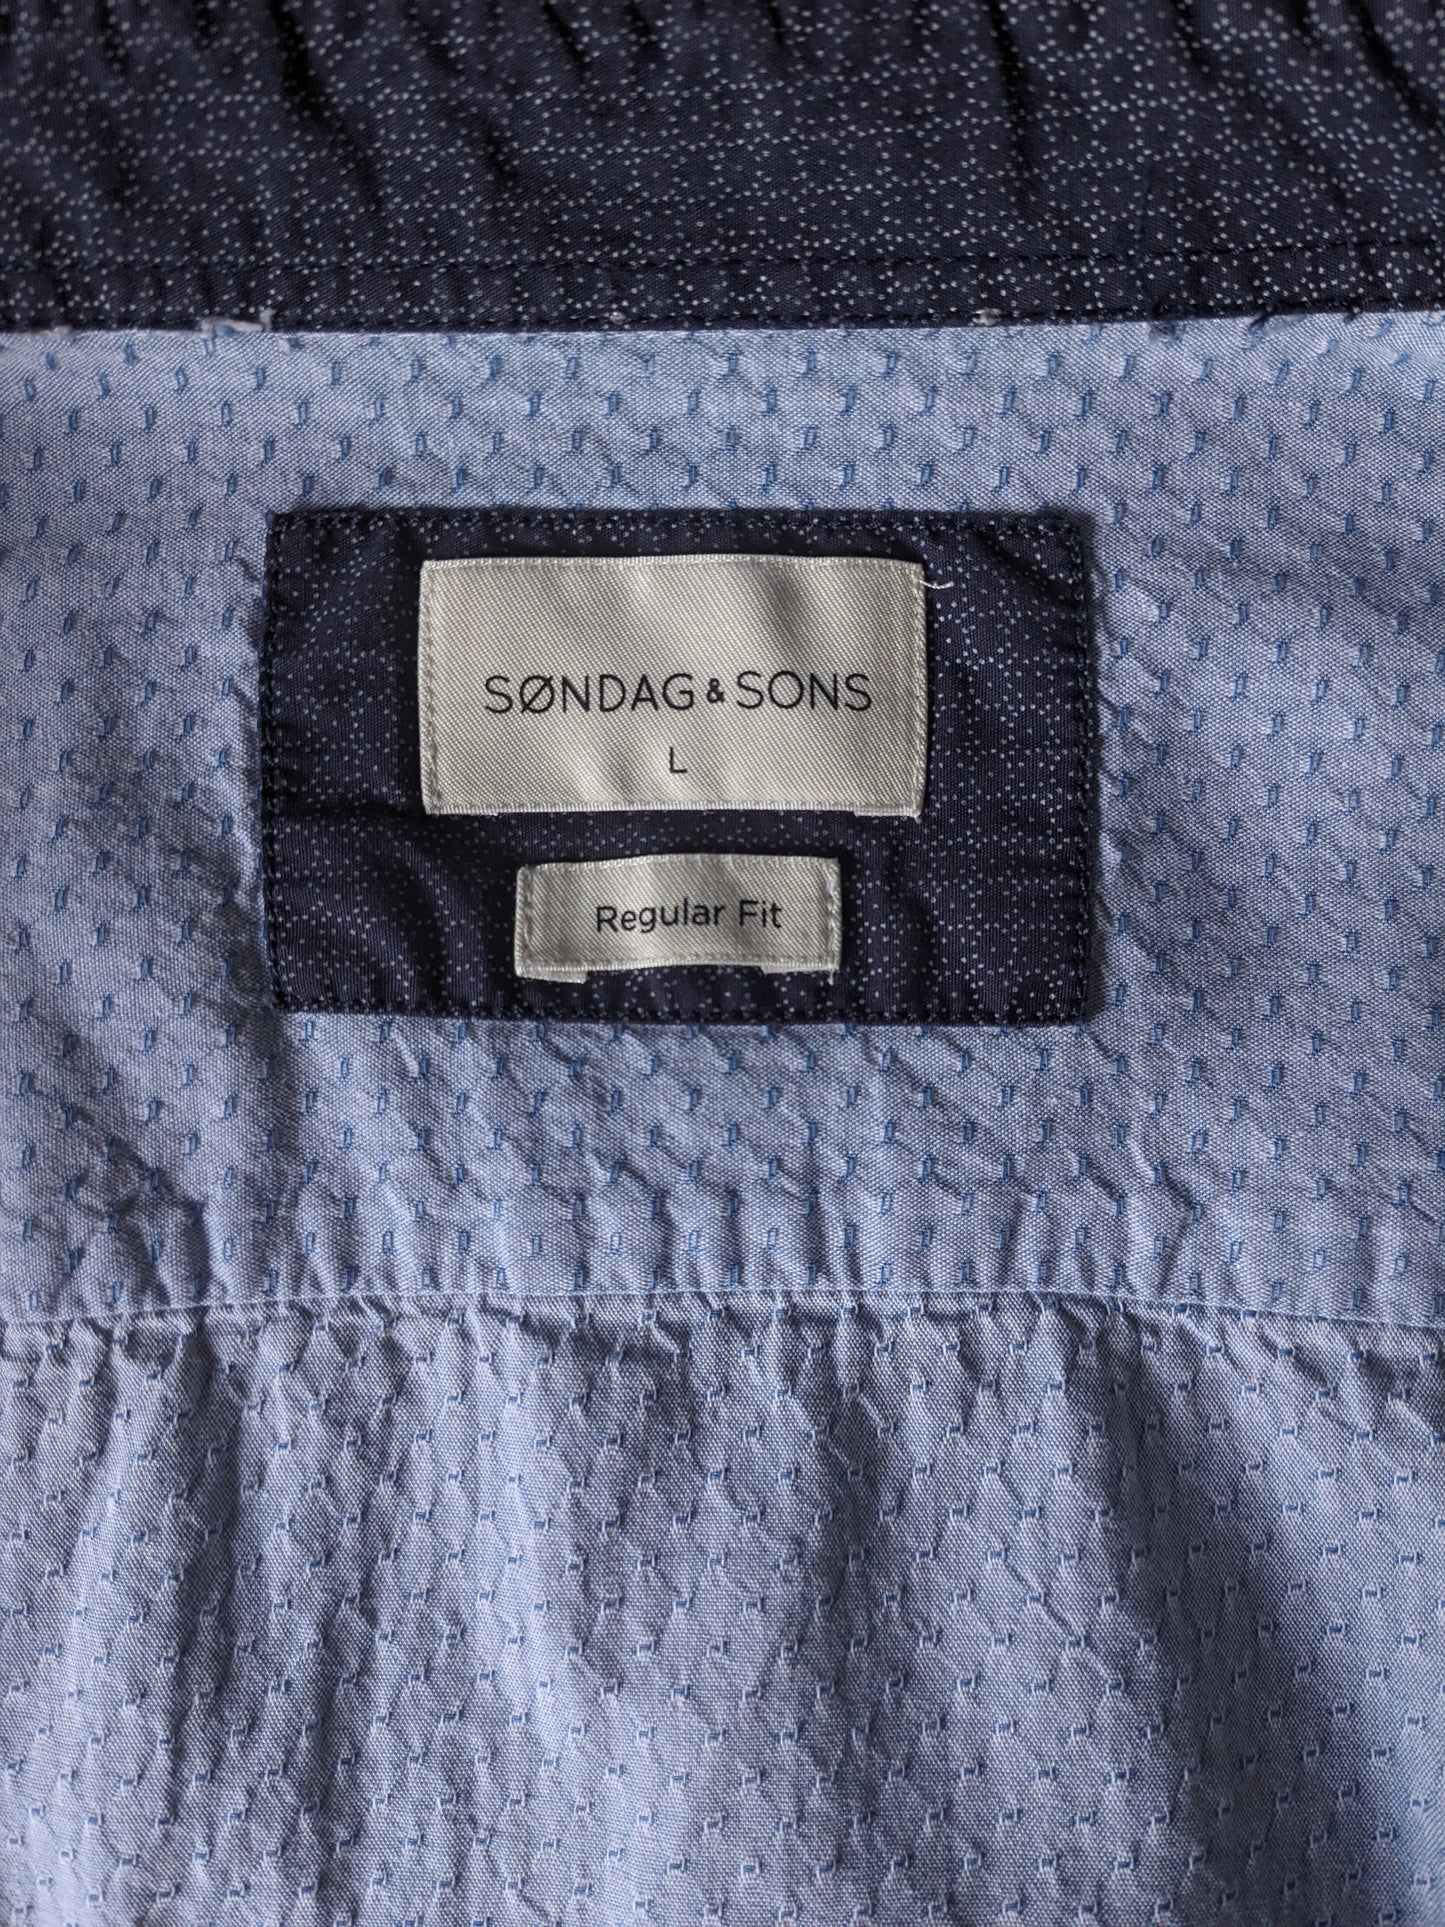 Camicia Sondag & Sons. Motivo blu chiaro. Dimensione L. Fit regolare.